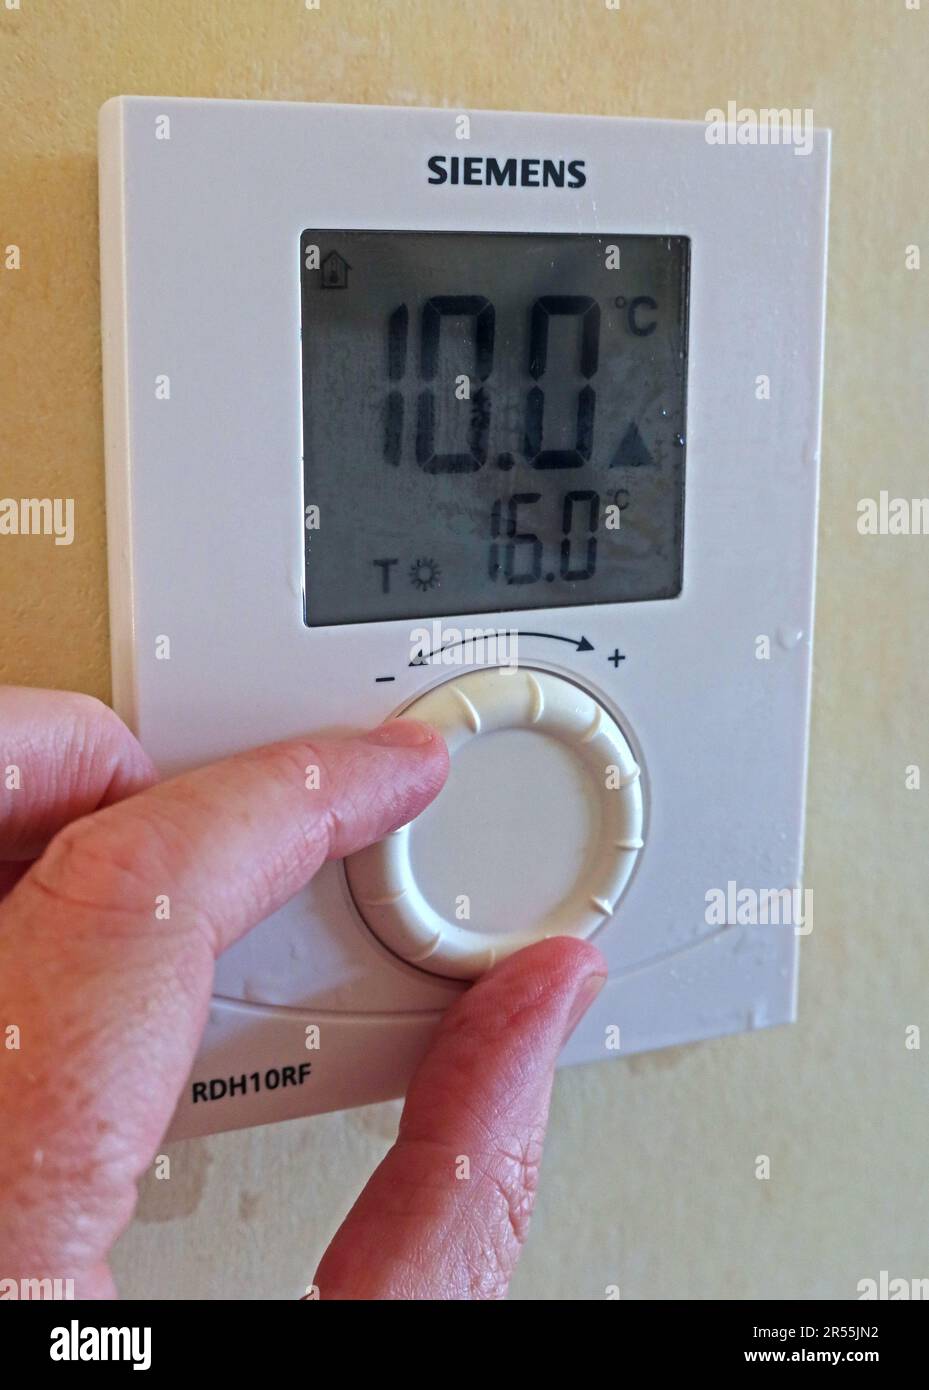 Regolazione di un termostato a basse temperature (10deg) per attivare il riscaldamento, utilizzando un comando Siemens RDH10RF montato a parete Foto Stock